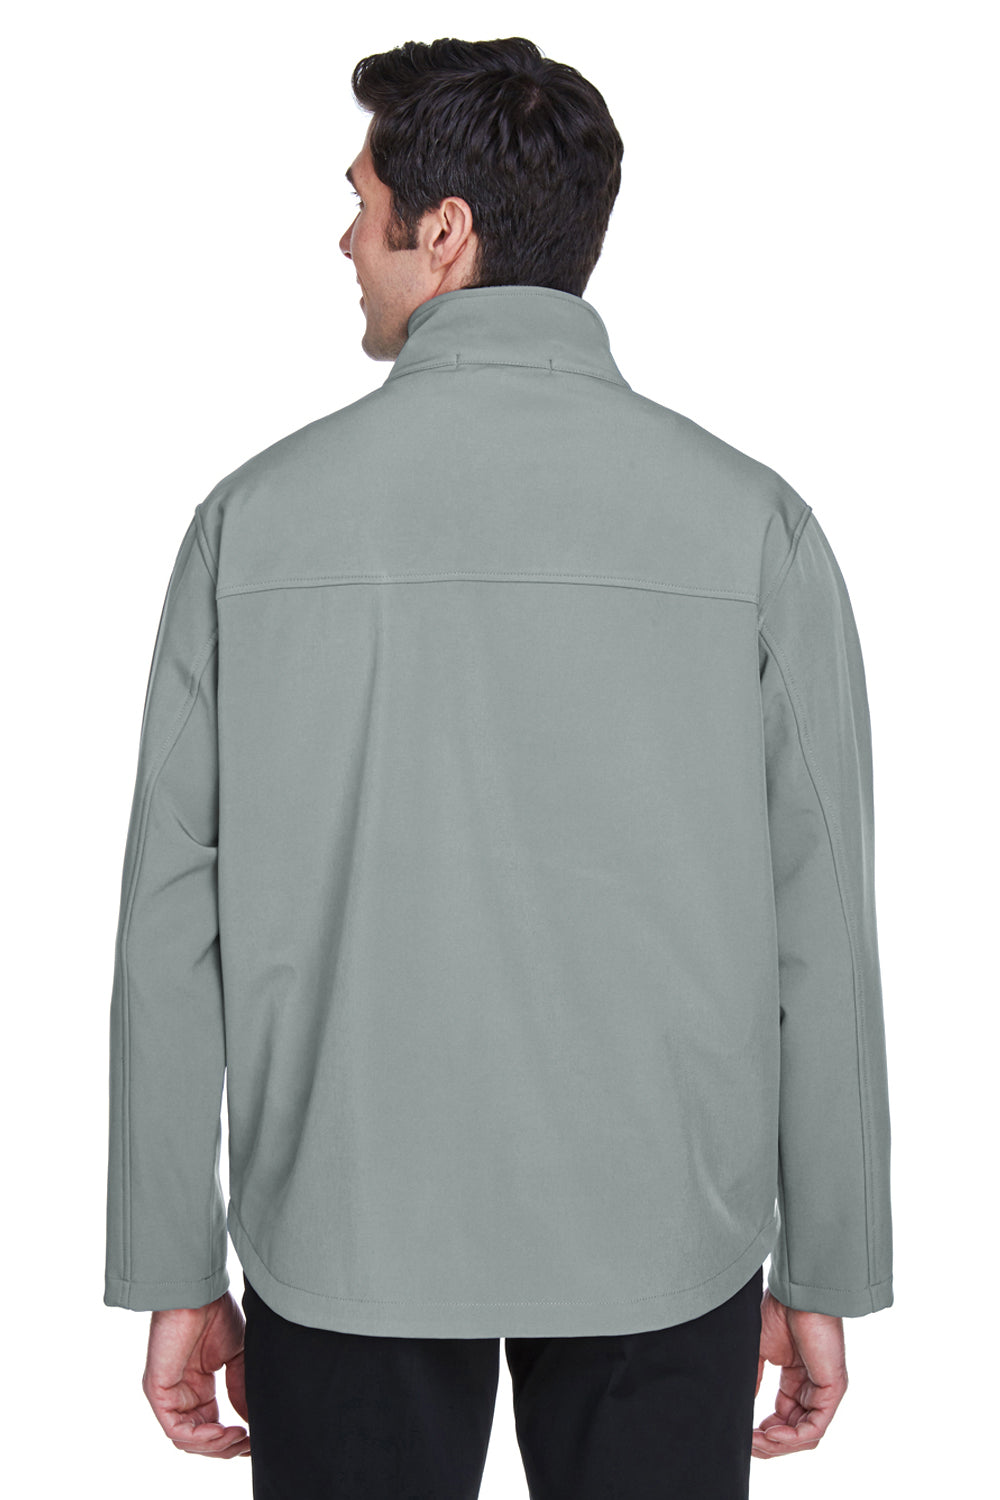 Devon & Jones D995 Mens Wind & Water Resistant Full Zip Jacket Charcoal Grey Back